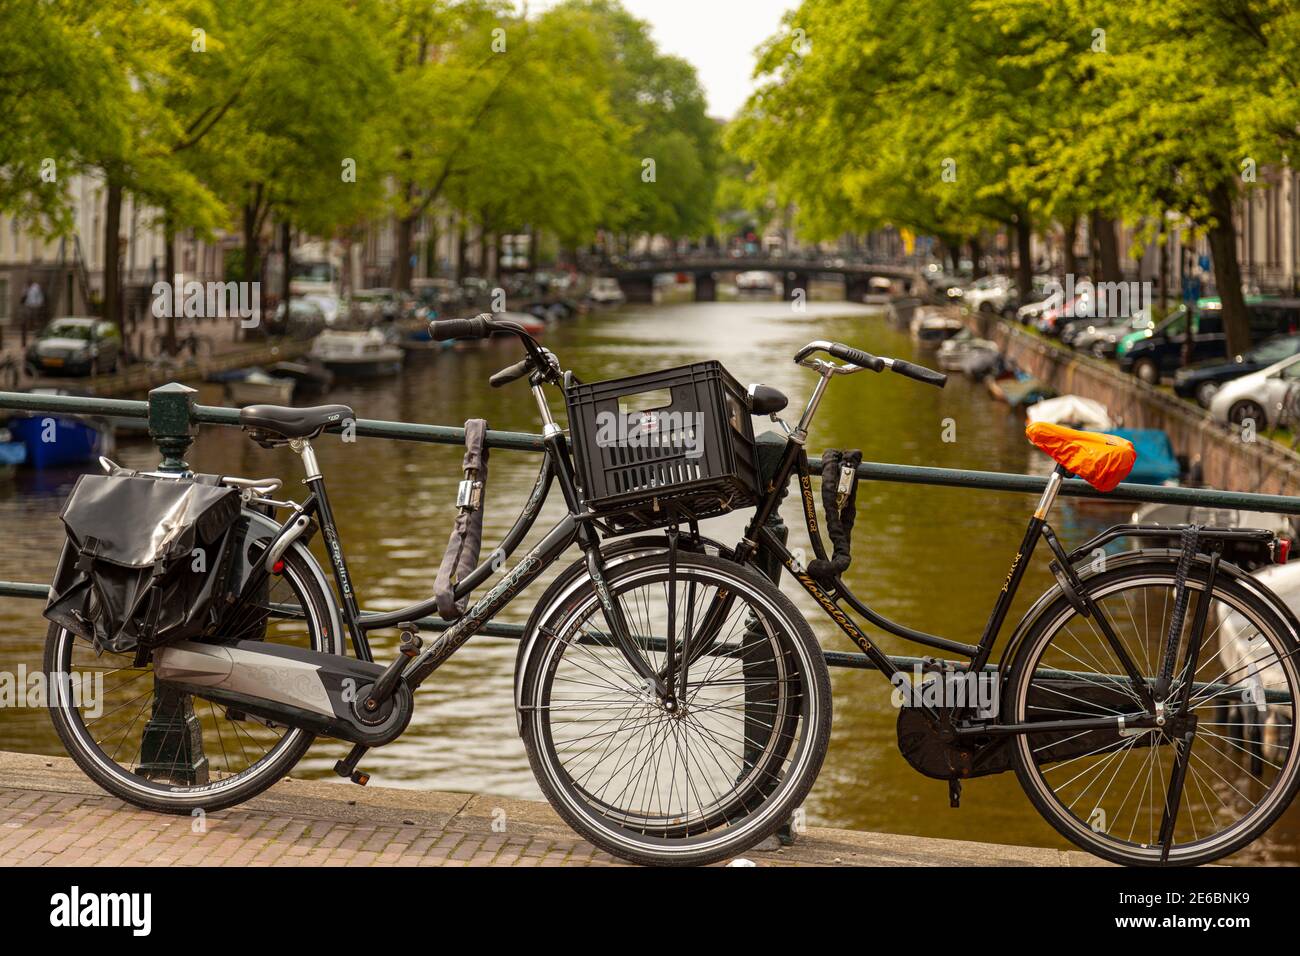 Amsterdam, Olanda 05-15-2010: Le classiche bici di vecchio stile sono concatenate alle ringhiere metalliche di uno dei ponti sopra la famosa rete di canali di Amsterdam Foto Stock